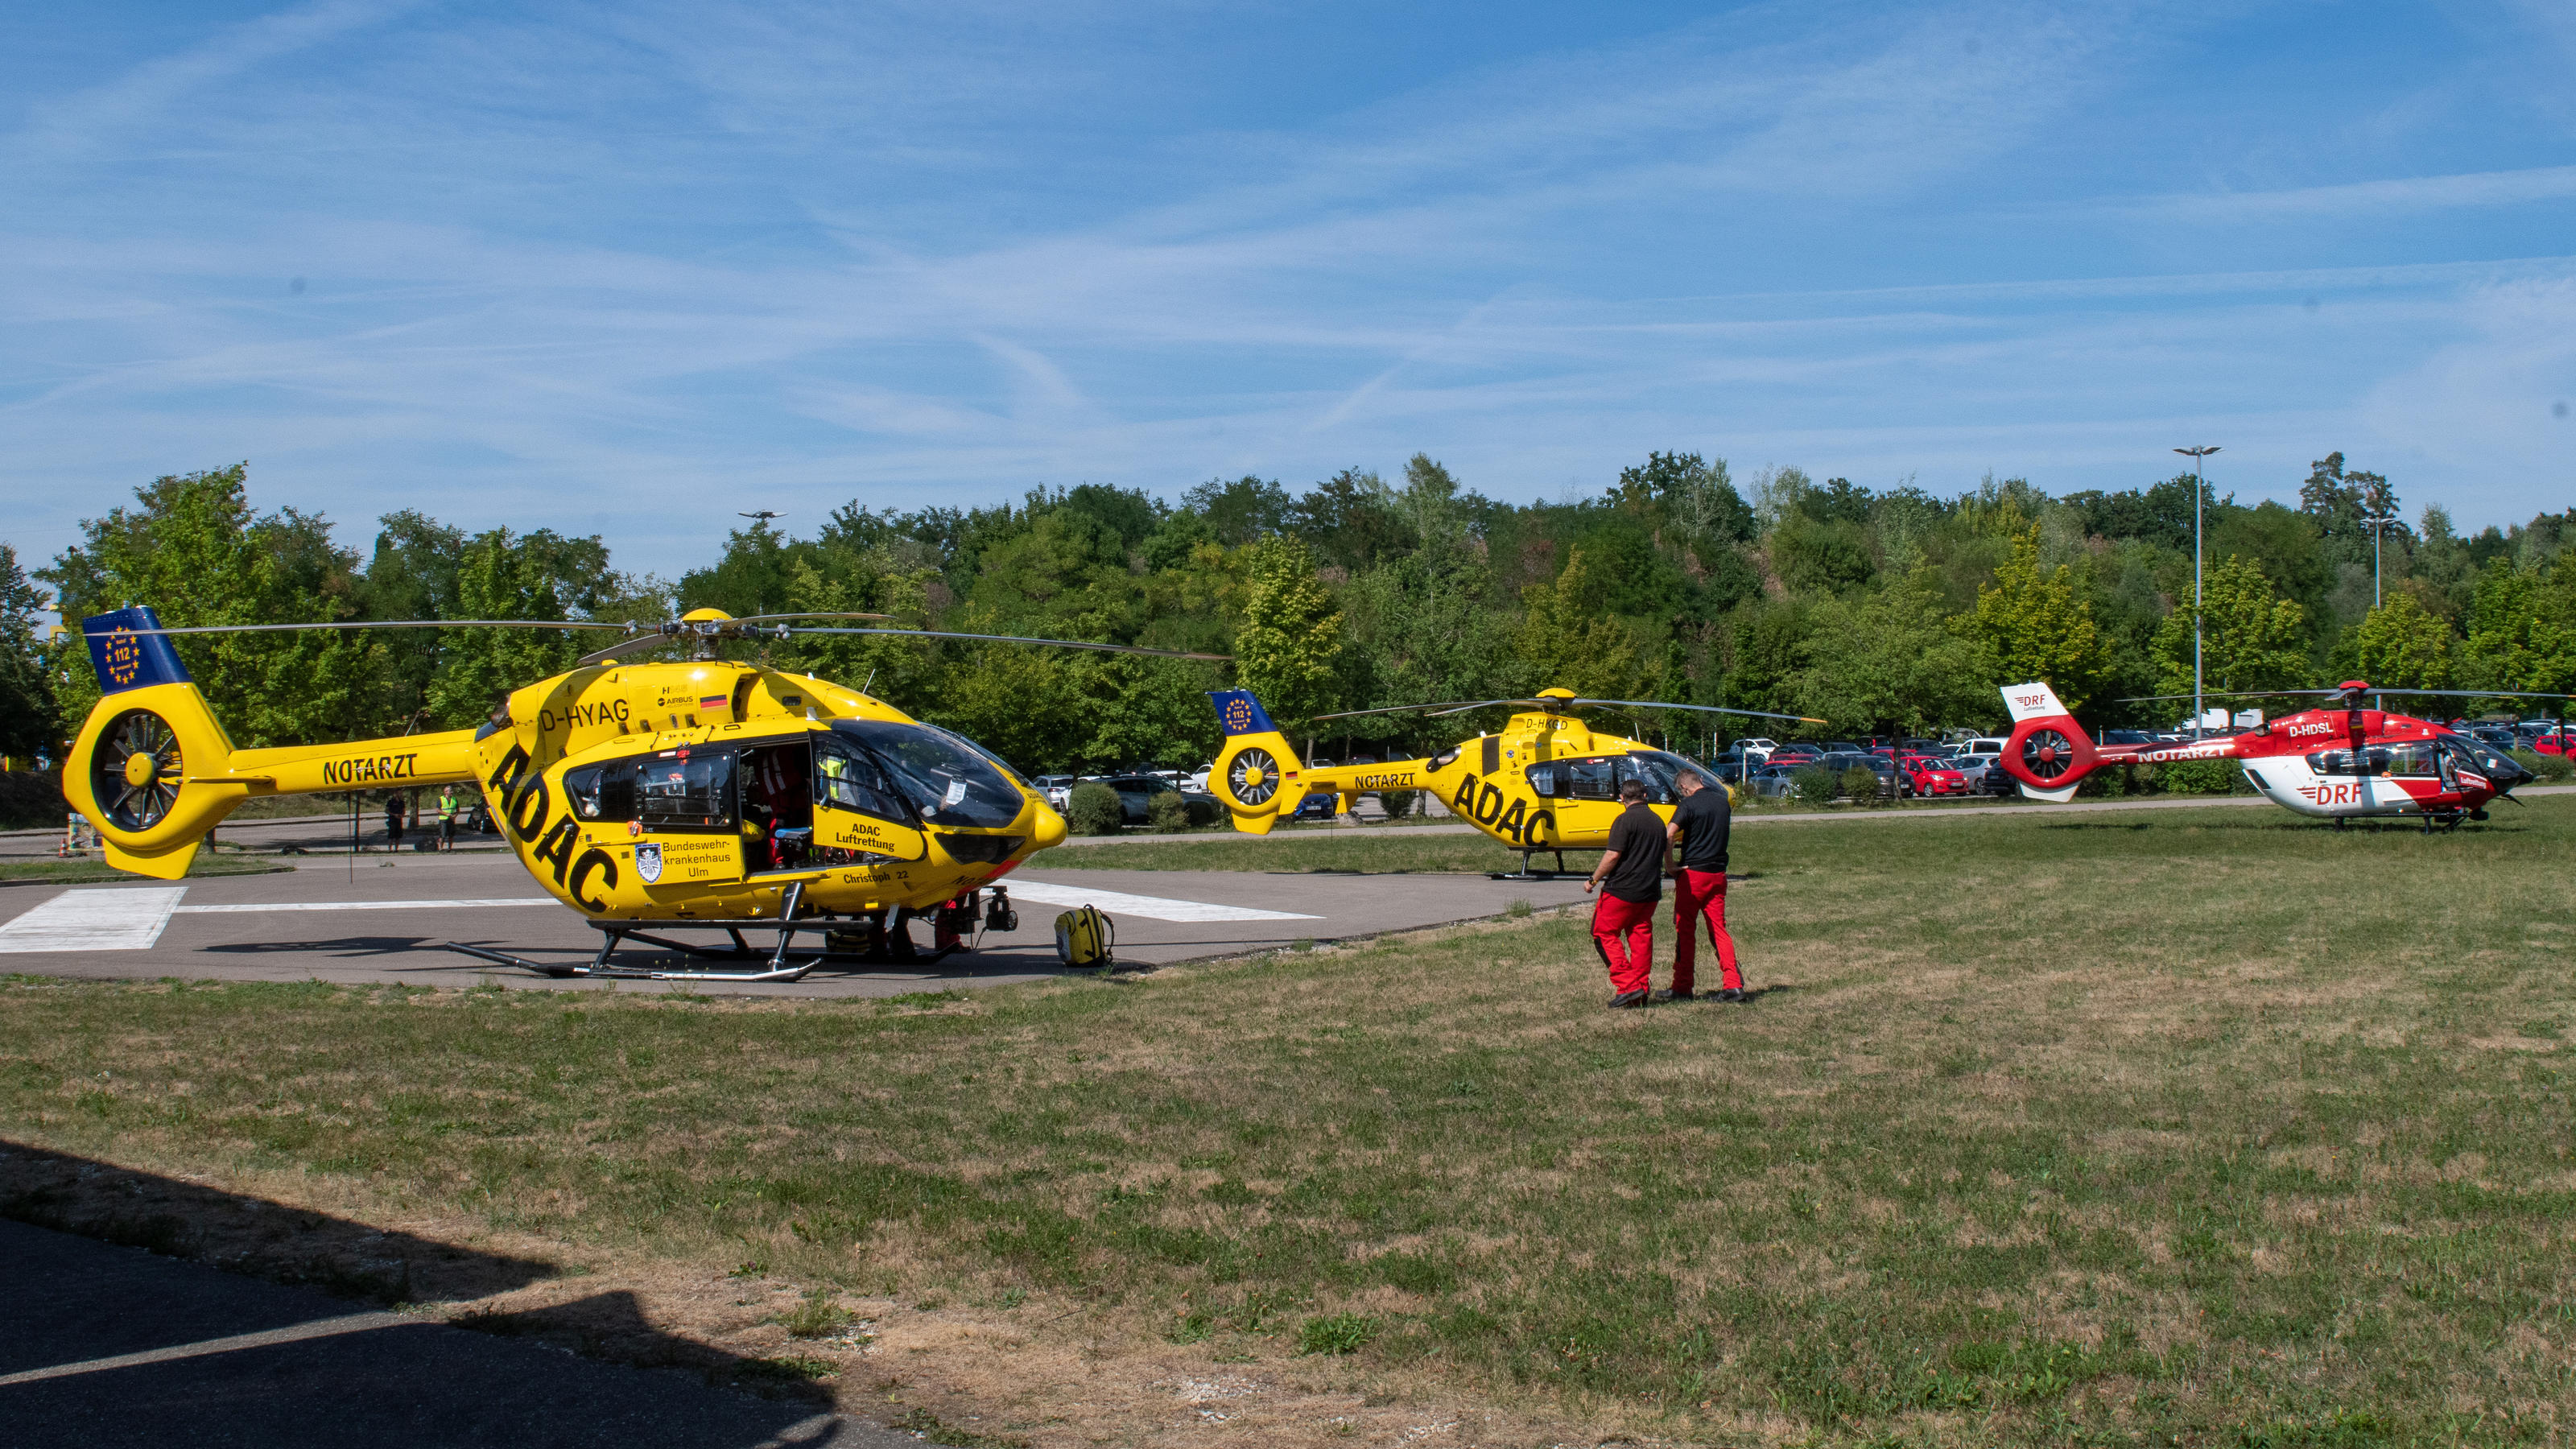 Rettungshubschrauber sind auf einem Feld in der Nähe von Legoland zu sehen. Bei dem Unfall auf einer Achterbahn im Legoland im schwäbischen Günzburg sind mindestens 34 Menschen verletzt worden, zwei davon schwer.